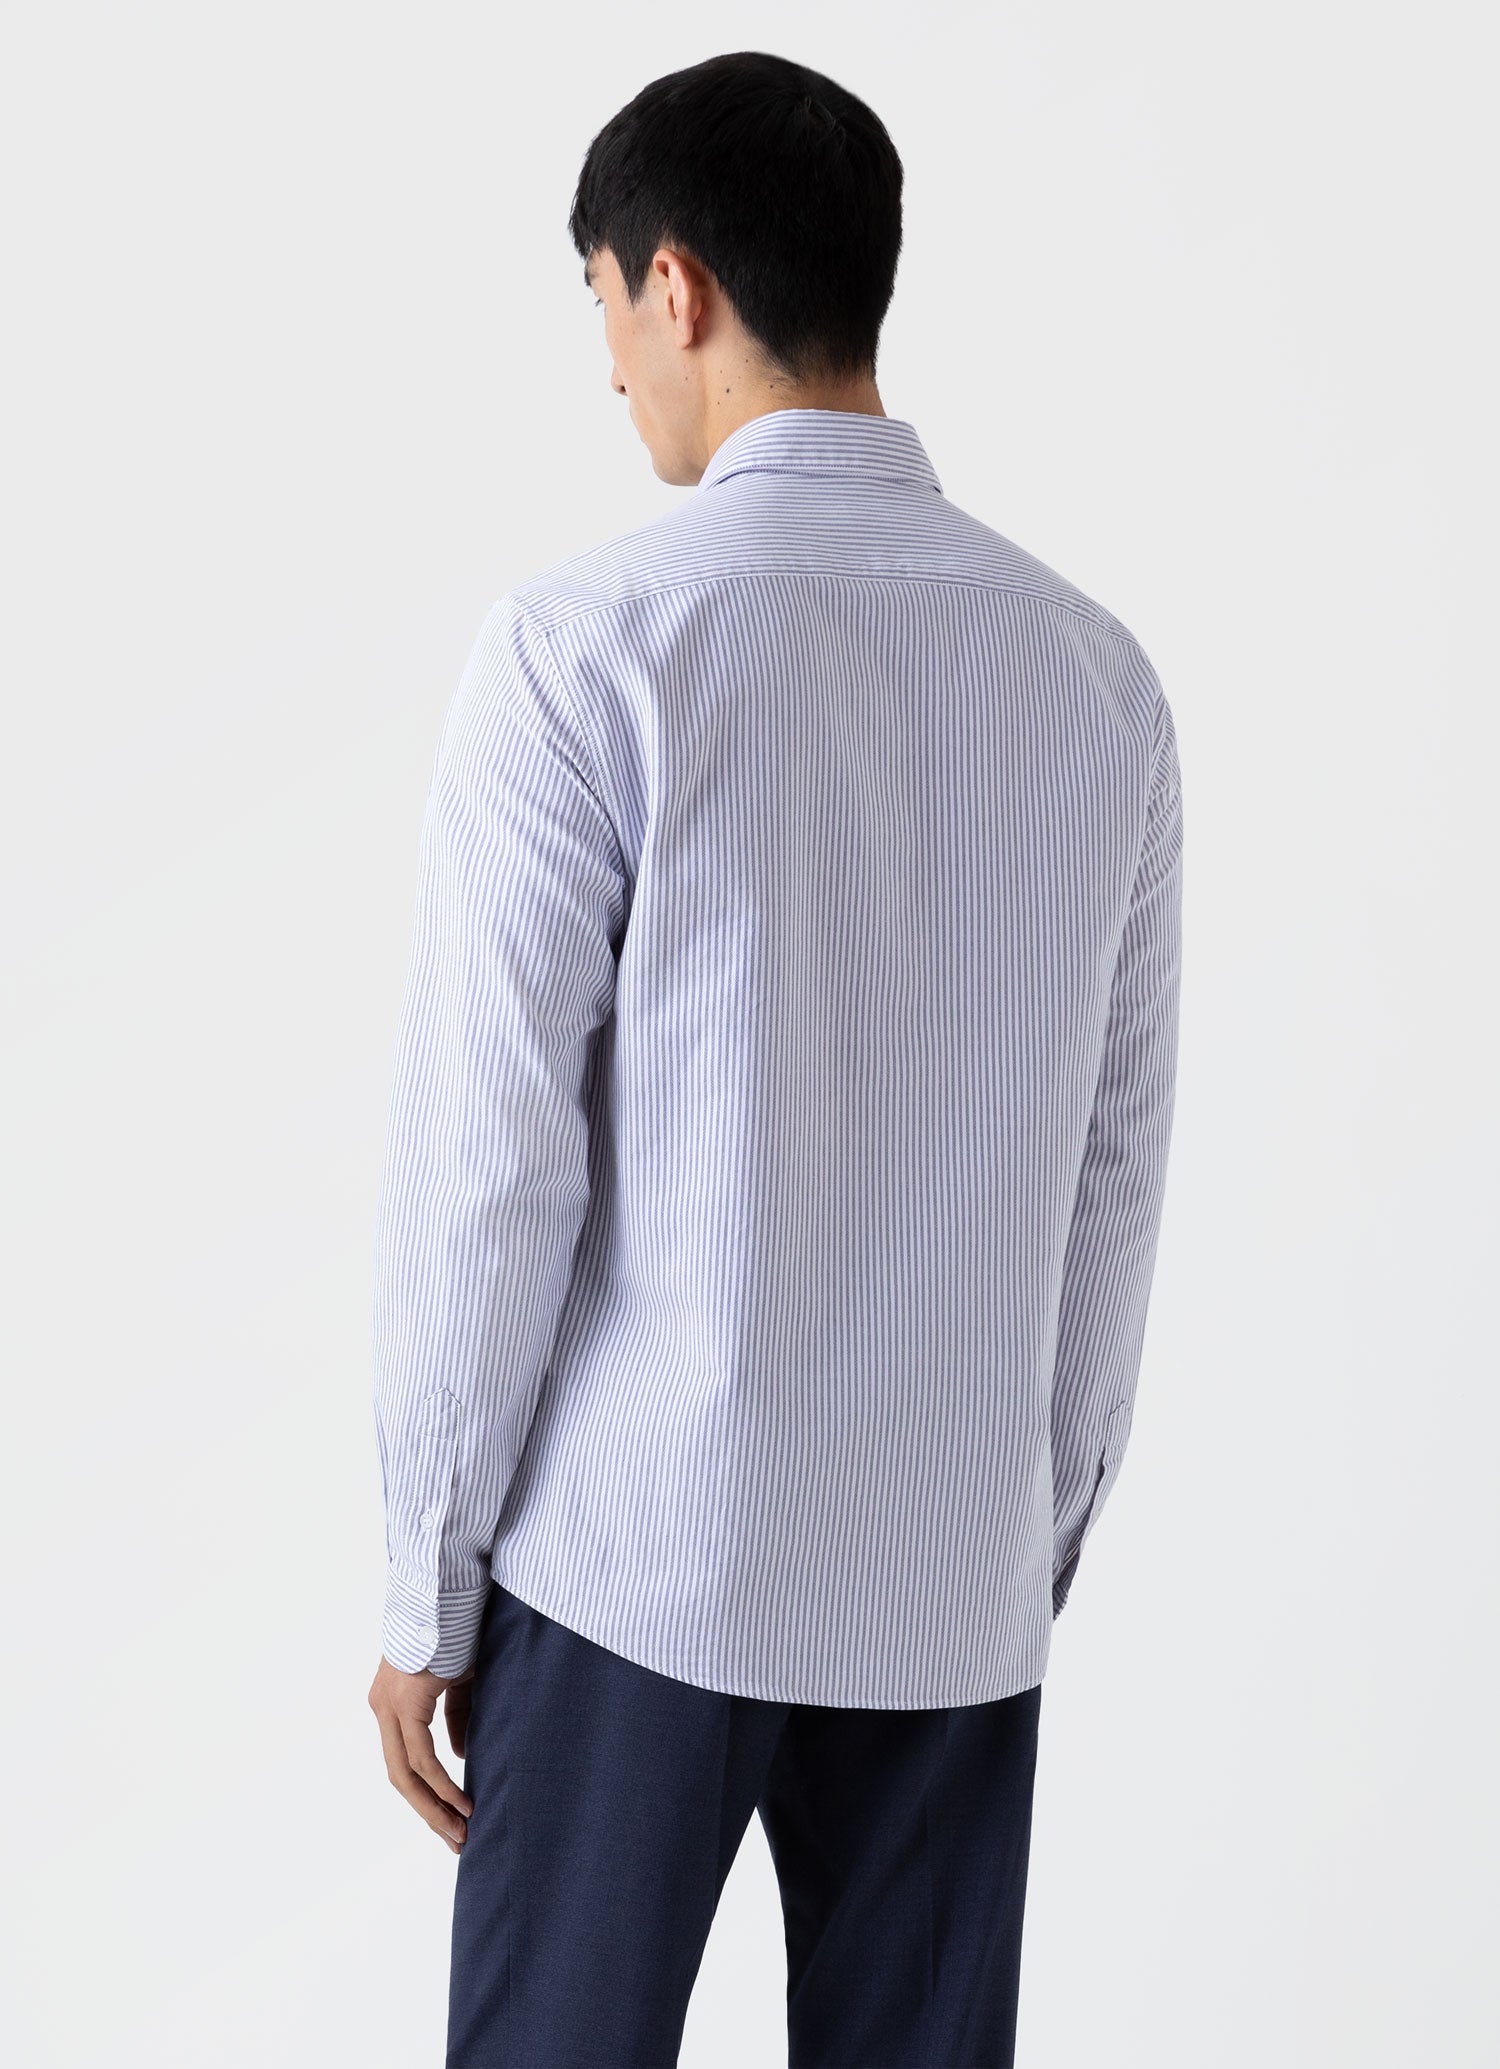 Men's Oxford Stripe Shirt in White/Navy Oxford Stripe